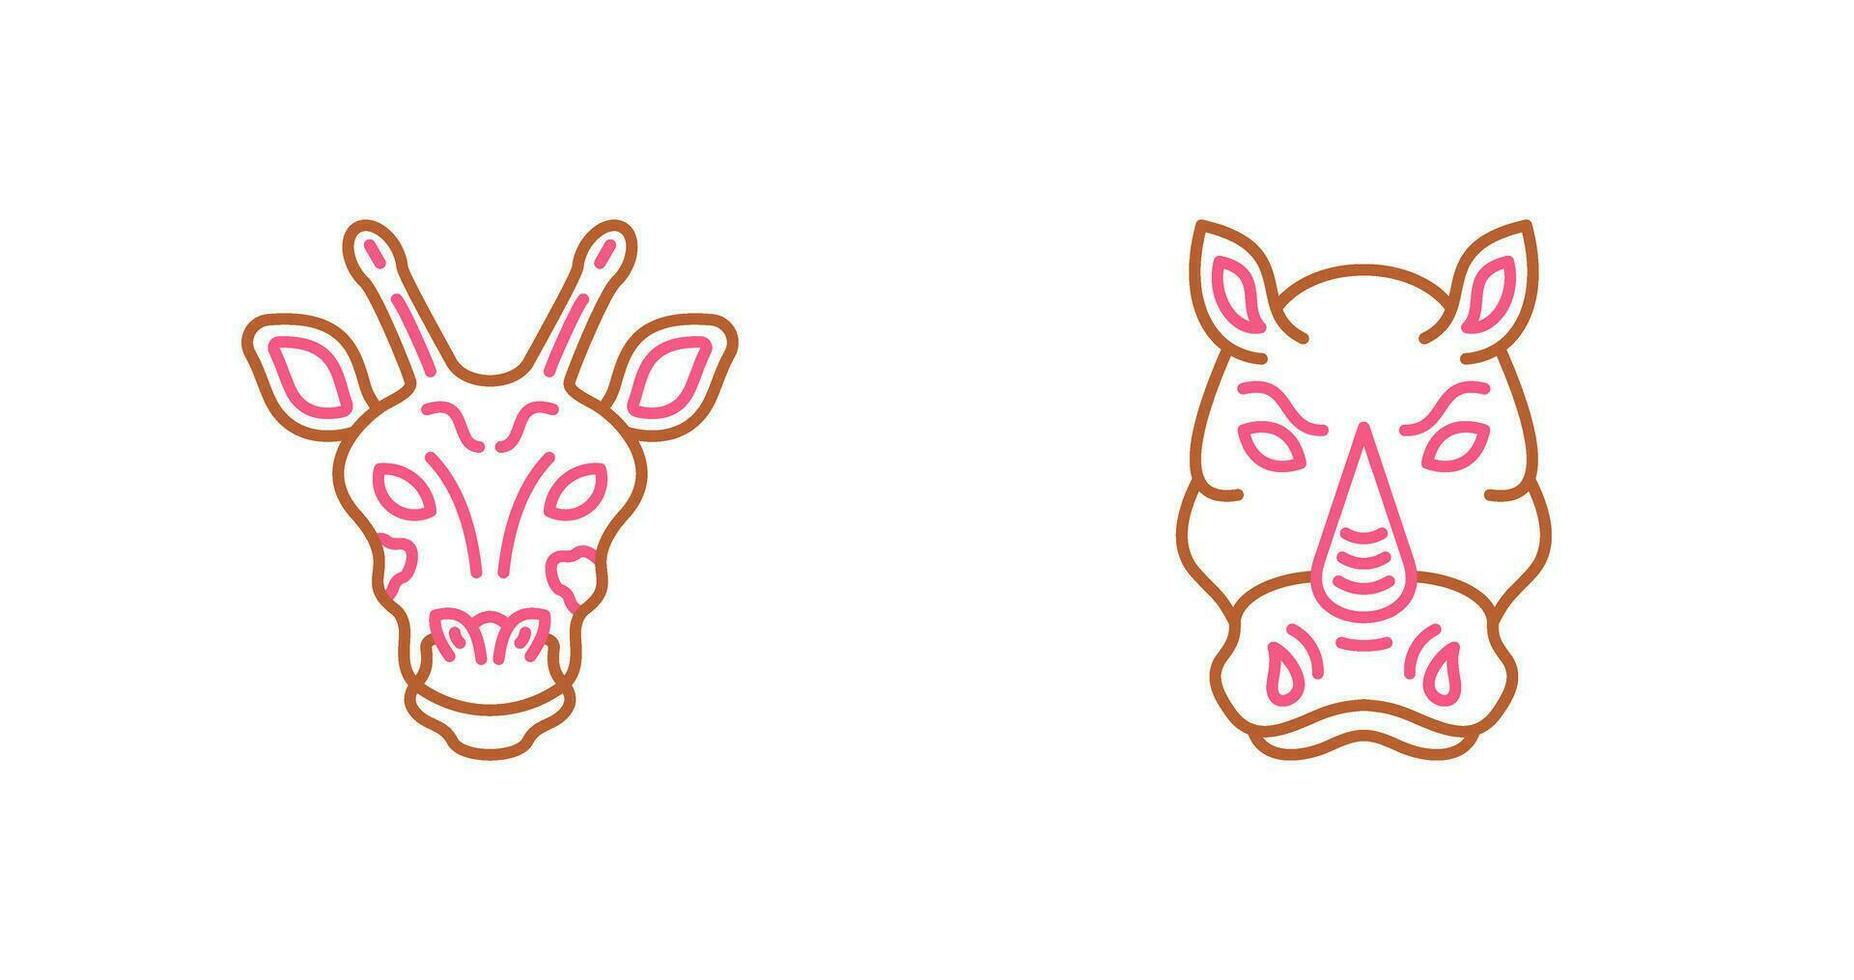 jirafa y rinoceronte icono vector